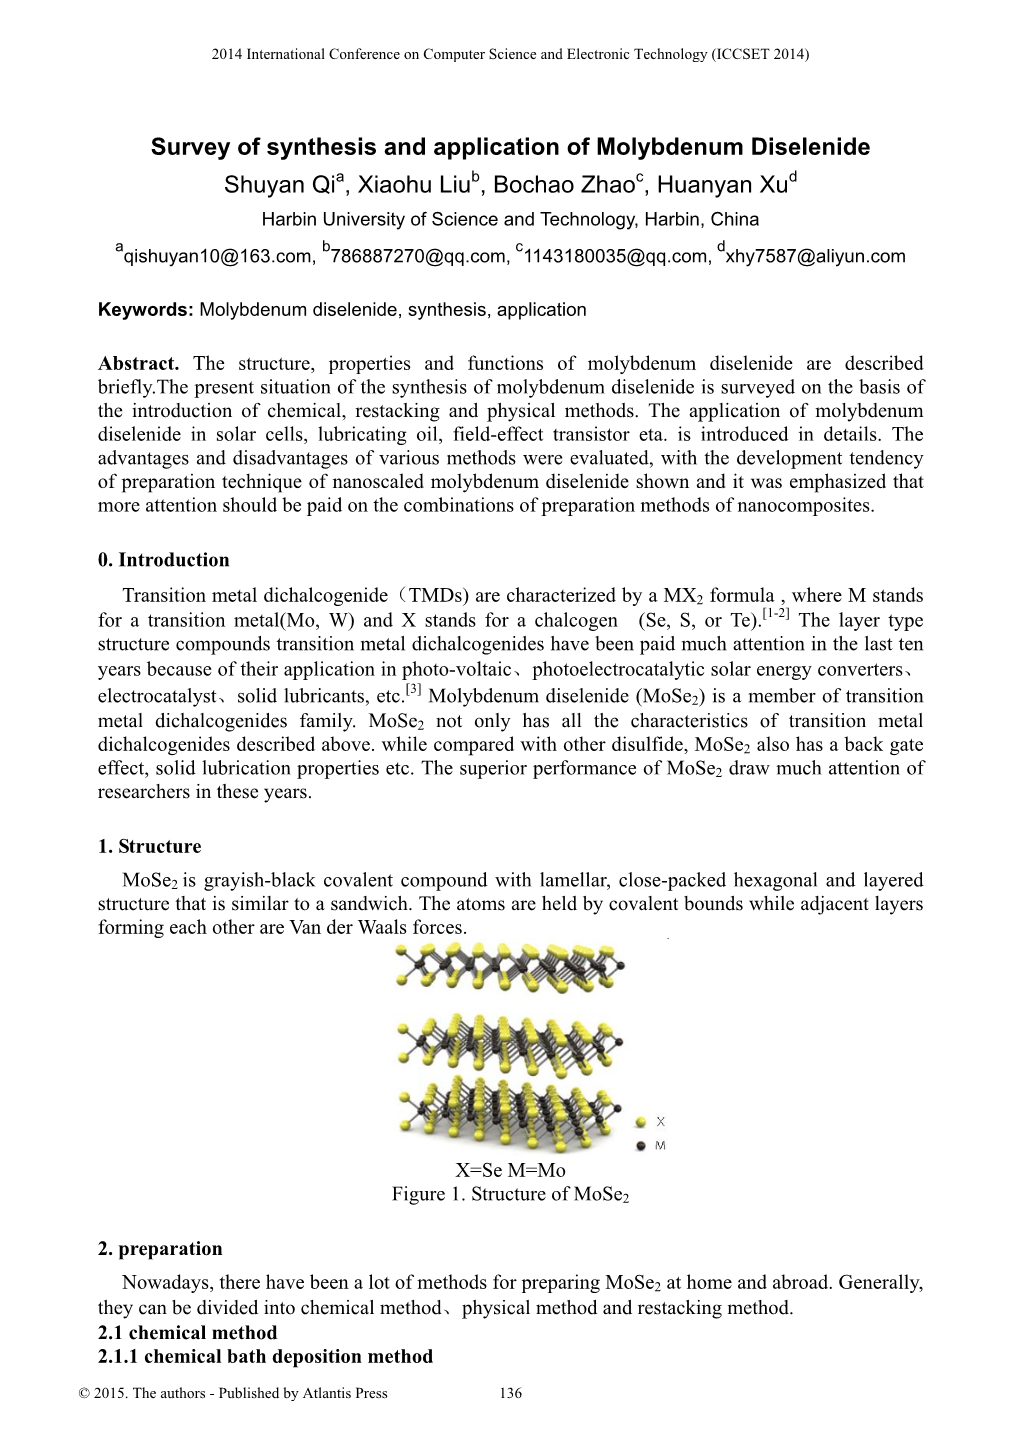 Survey of Synthesis and Application of Molybdenum Diselenide Shuyan Qia, Xiaohu Liub, Bochao Zhaoc, Huanyan Xud